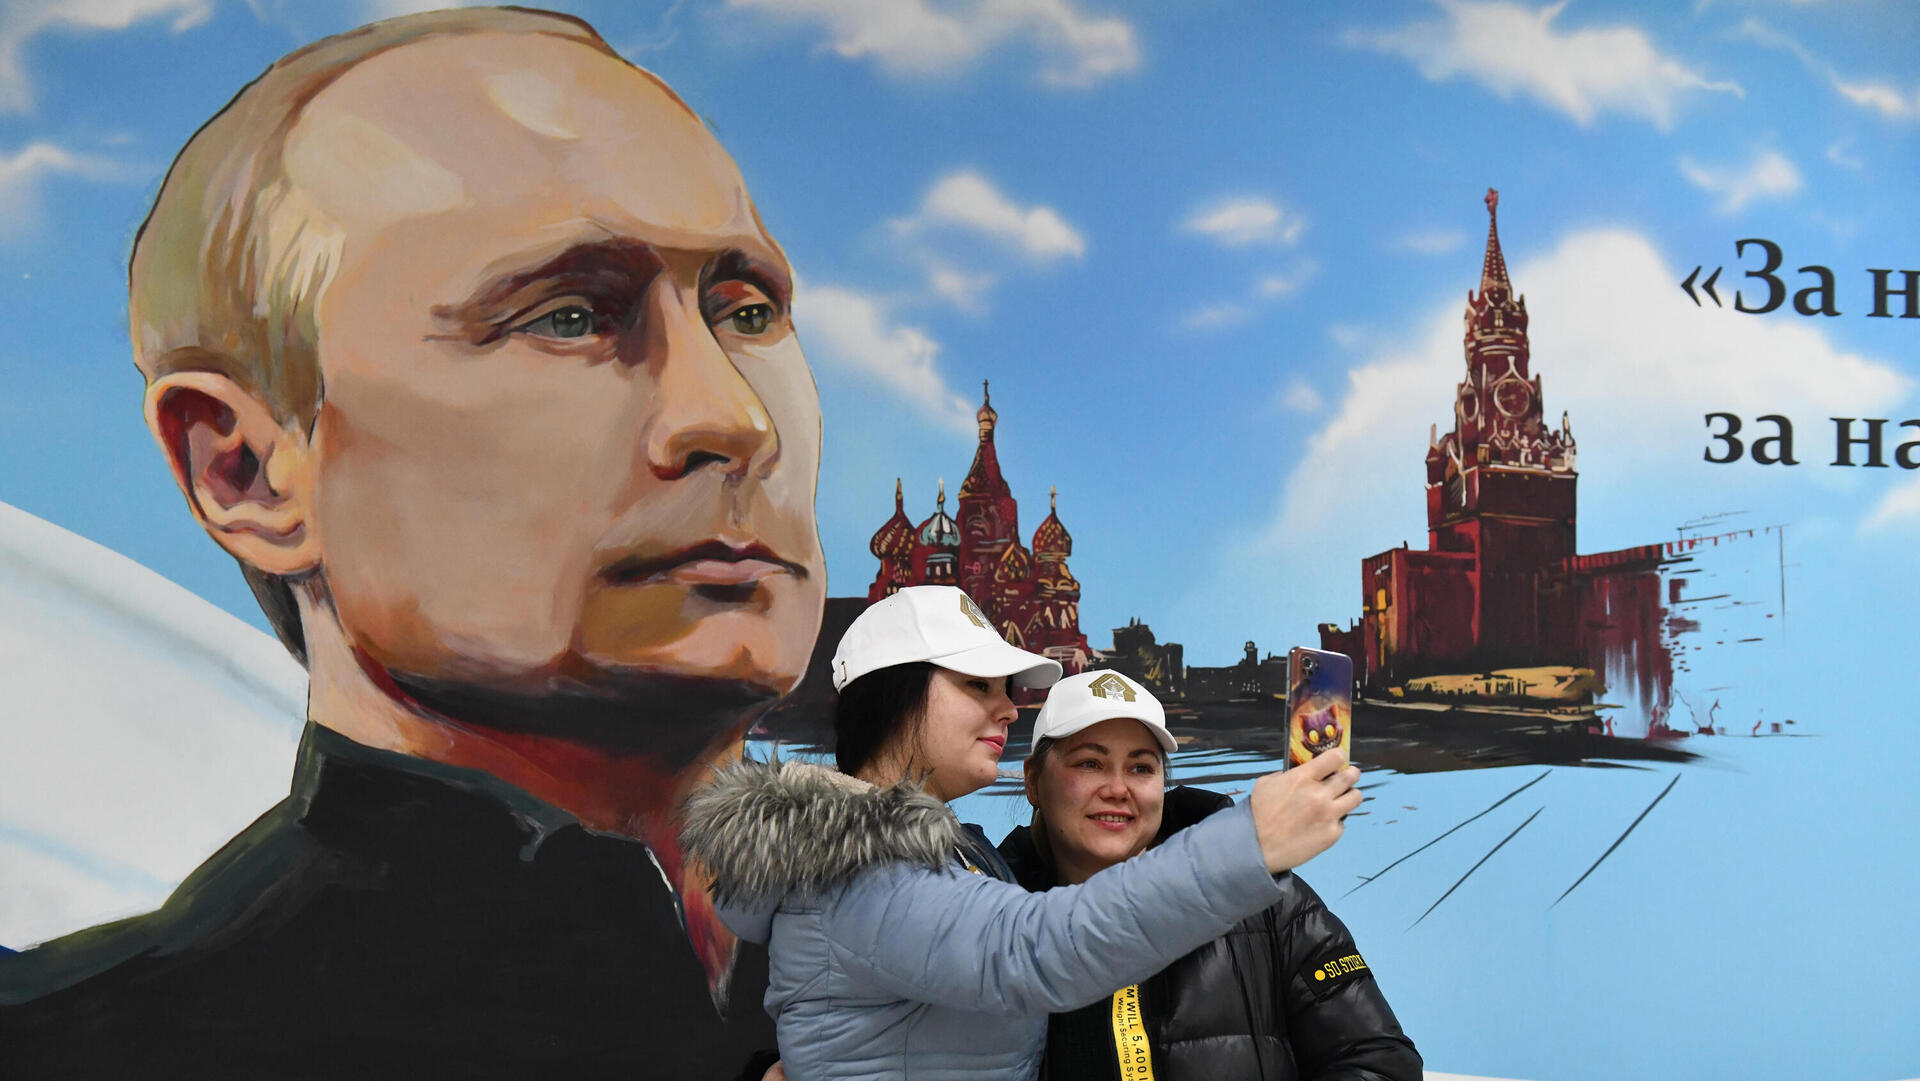 כרזת בחירות של פוטין במוסקבה